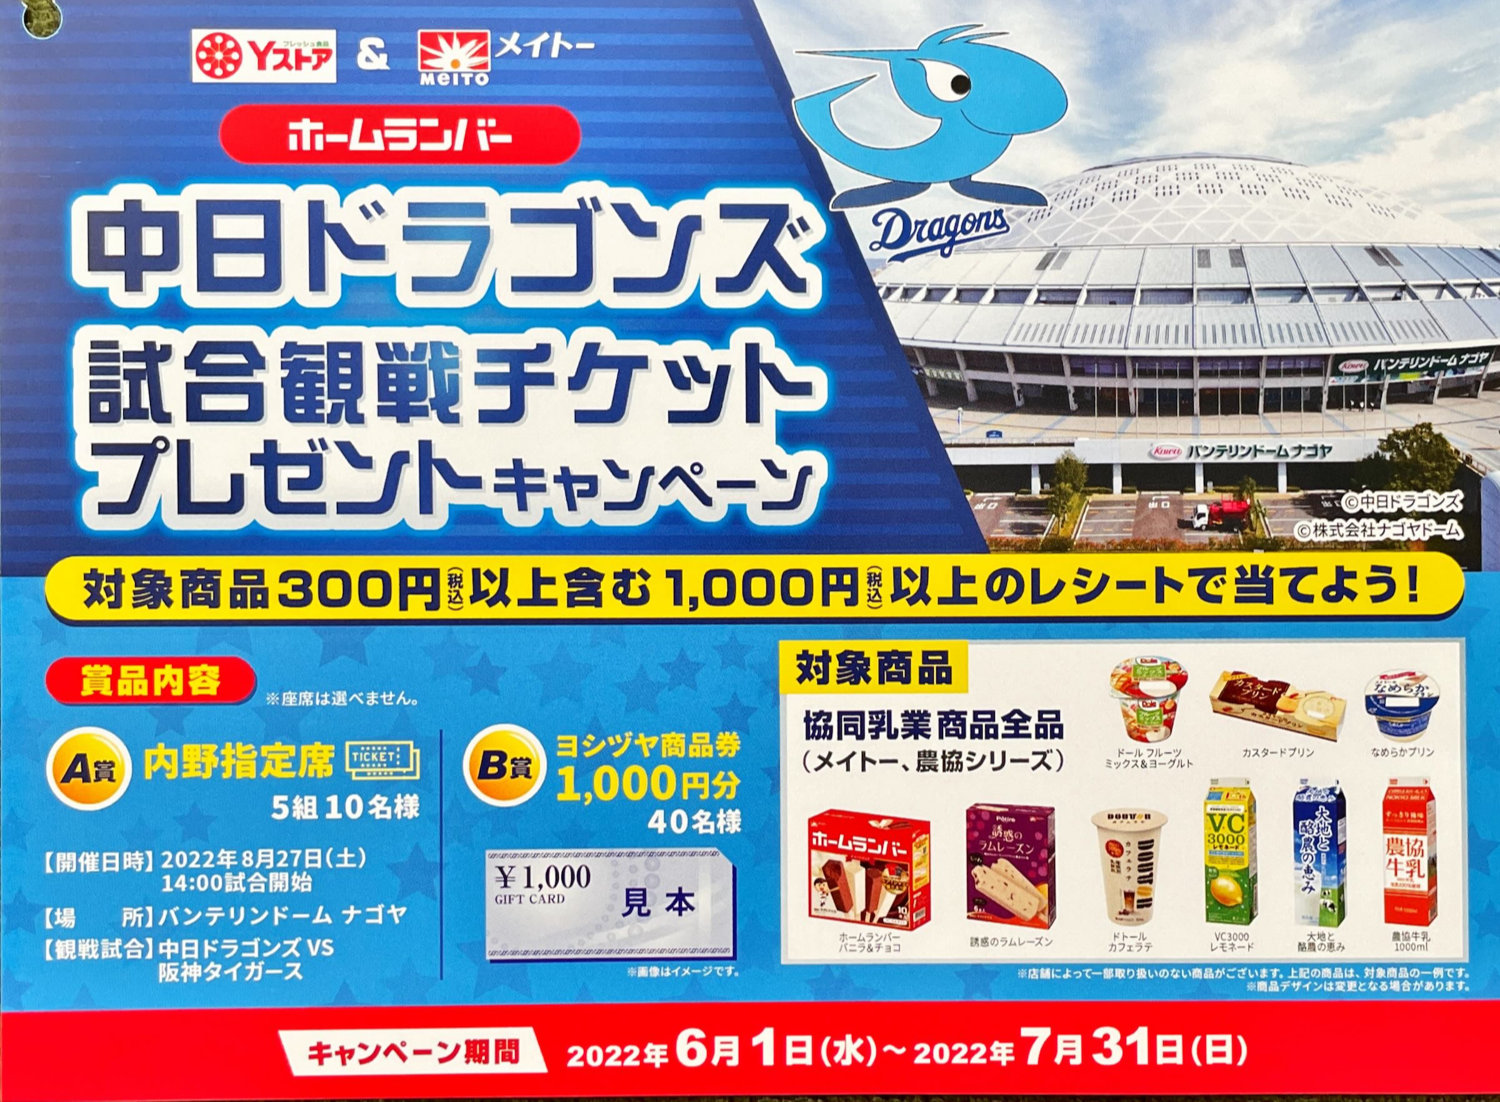 ドラゴンズ チケット 特価品コーナー☆ - 野球